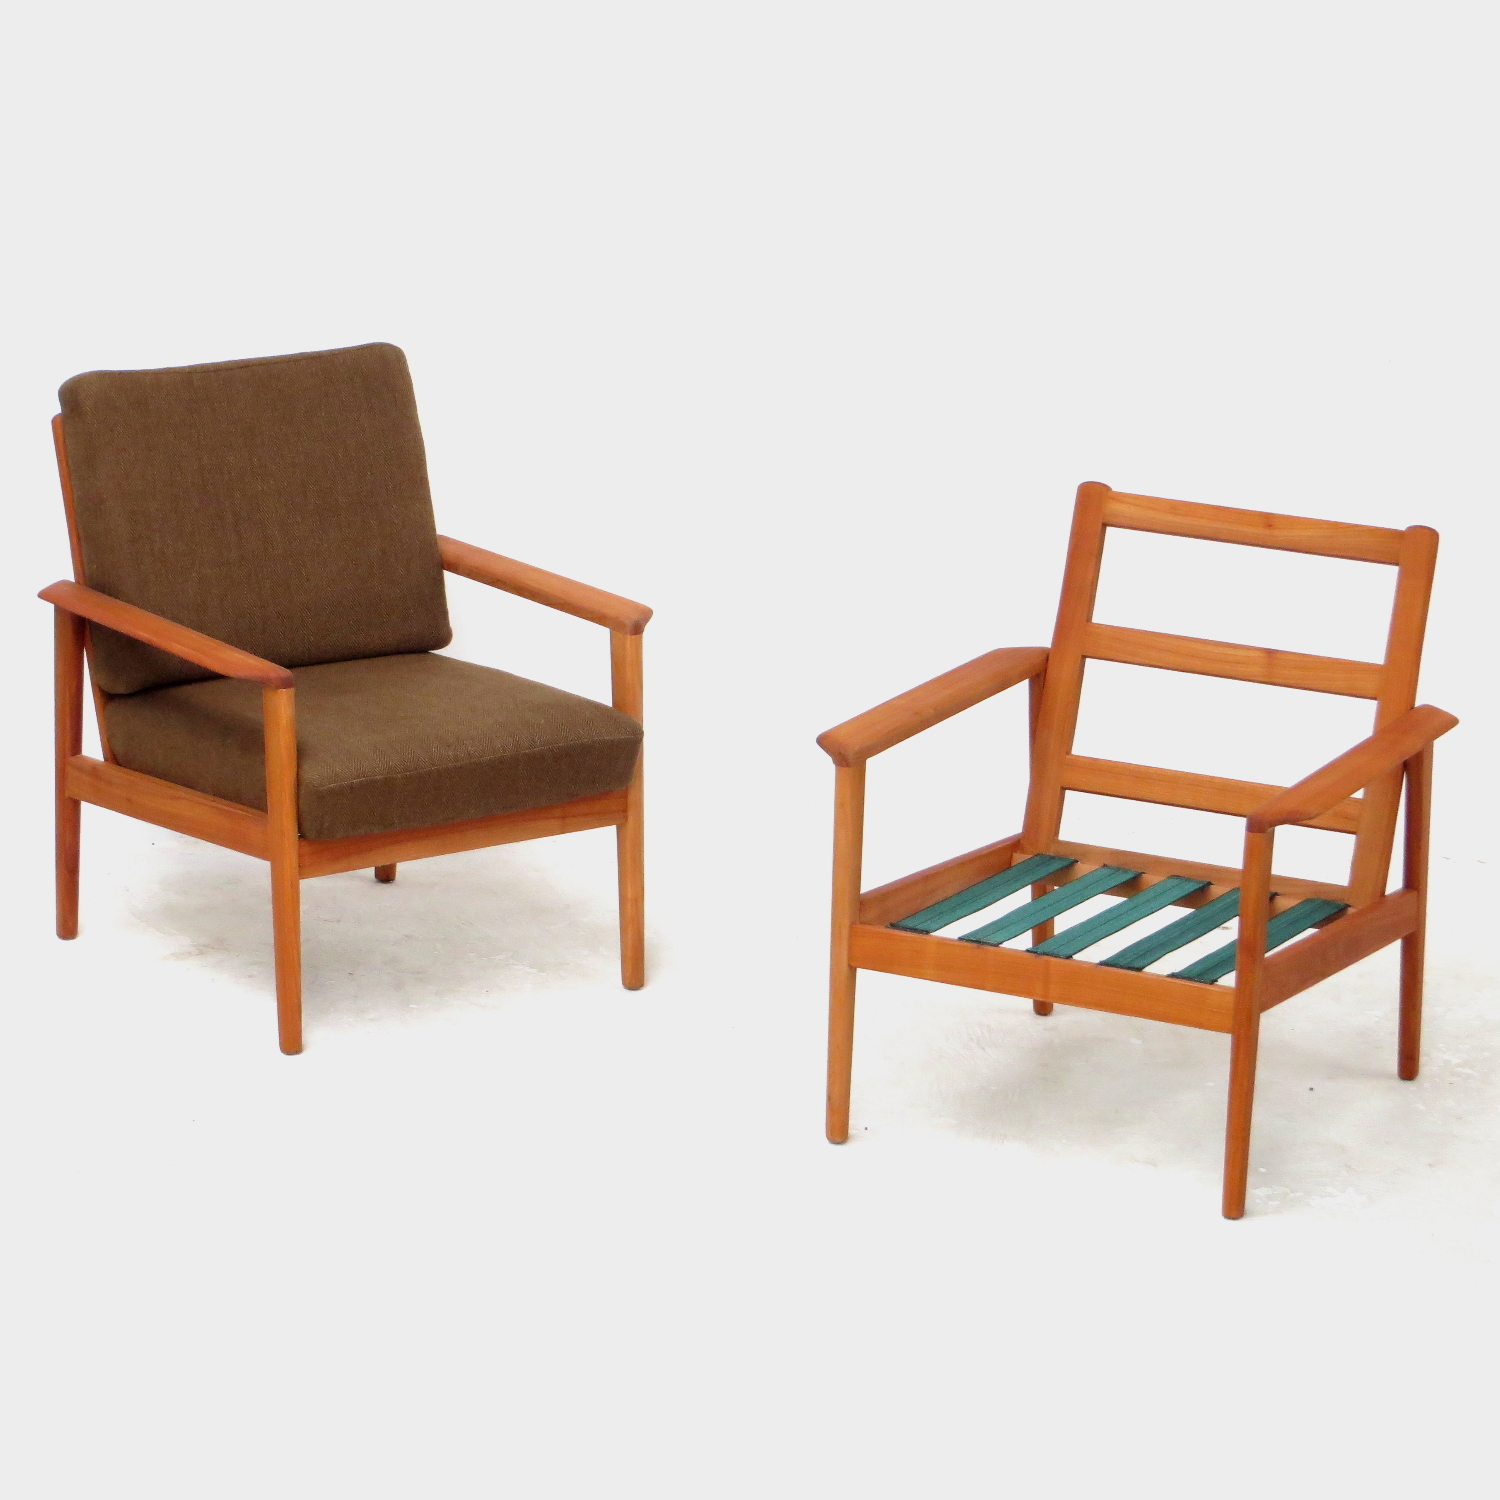 Foto van de twee vintage design fauteuils: één zonder kussens en één met kussens